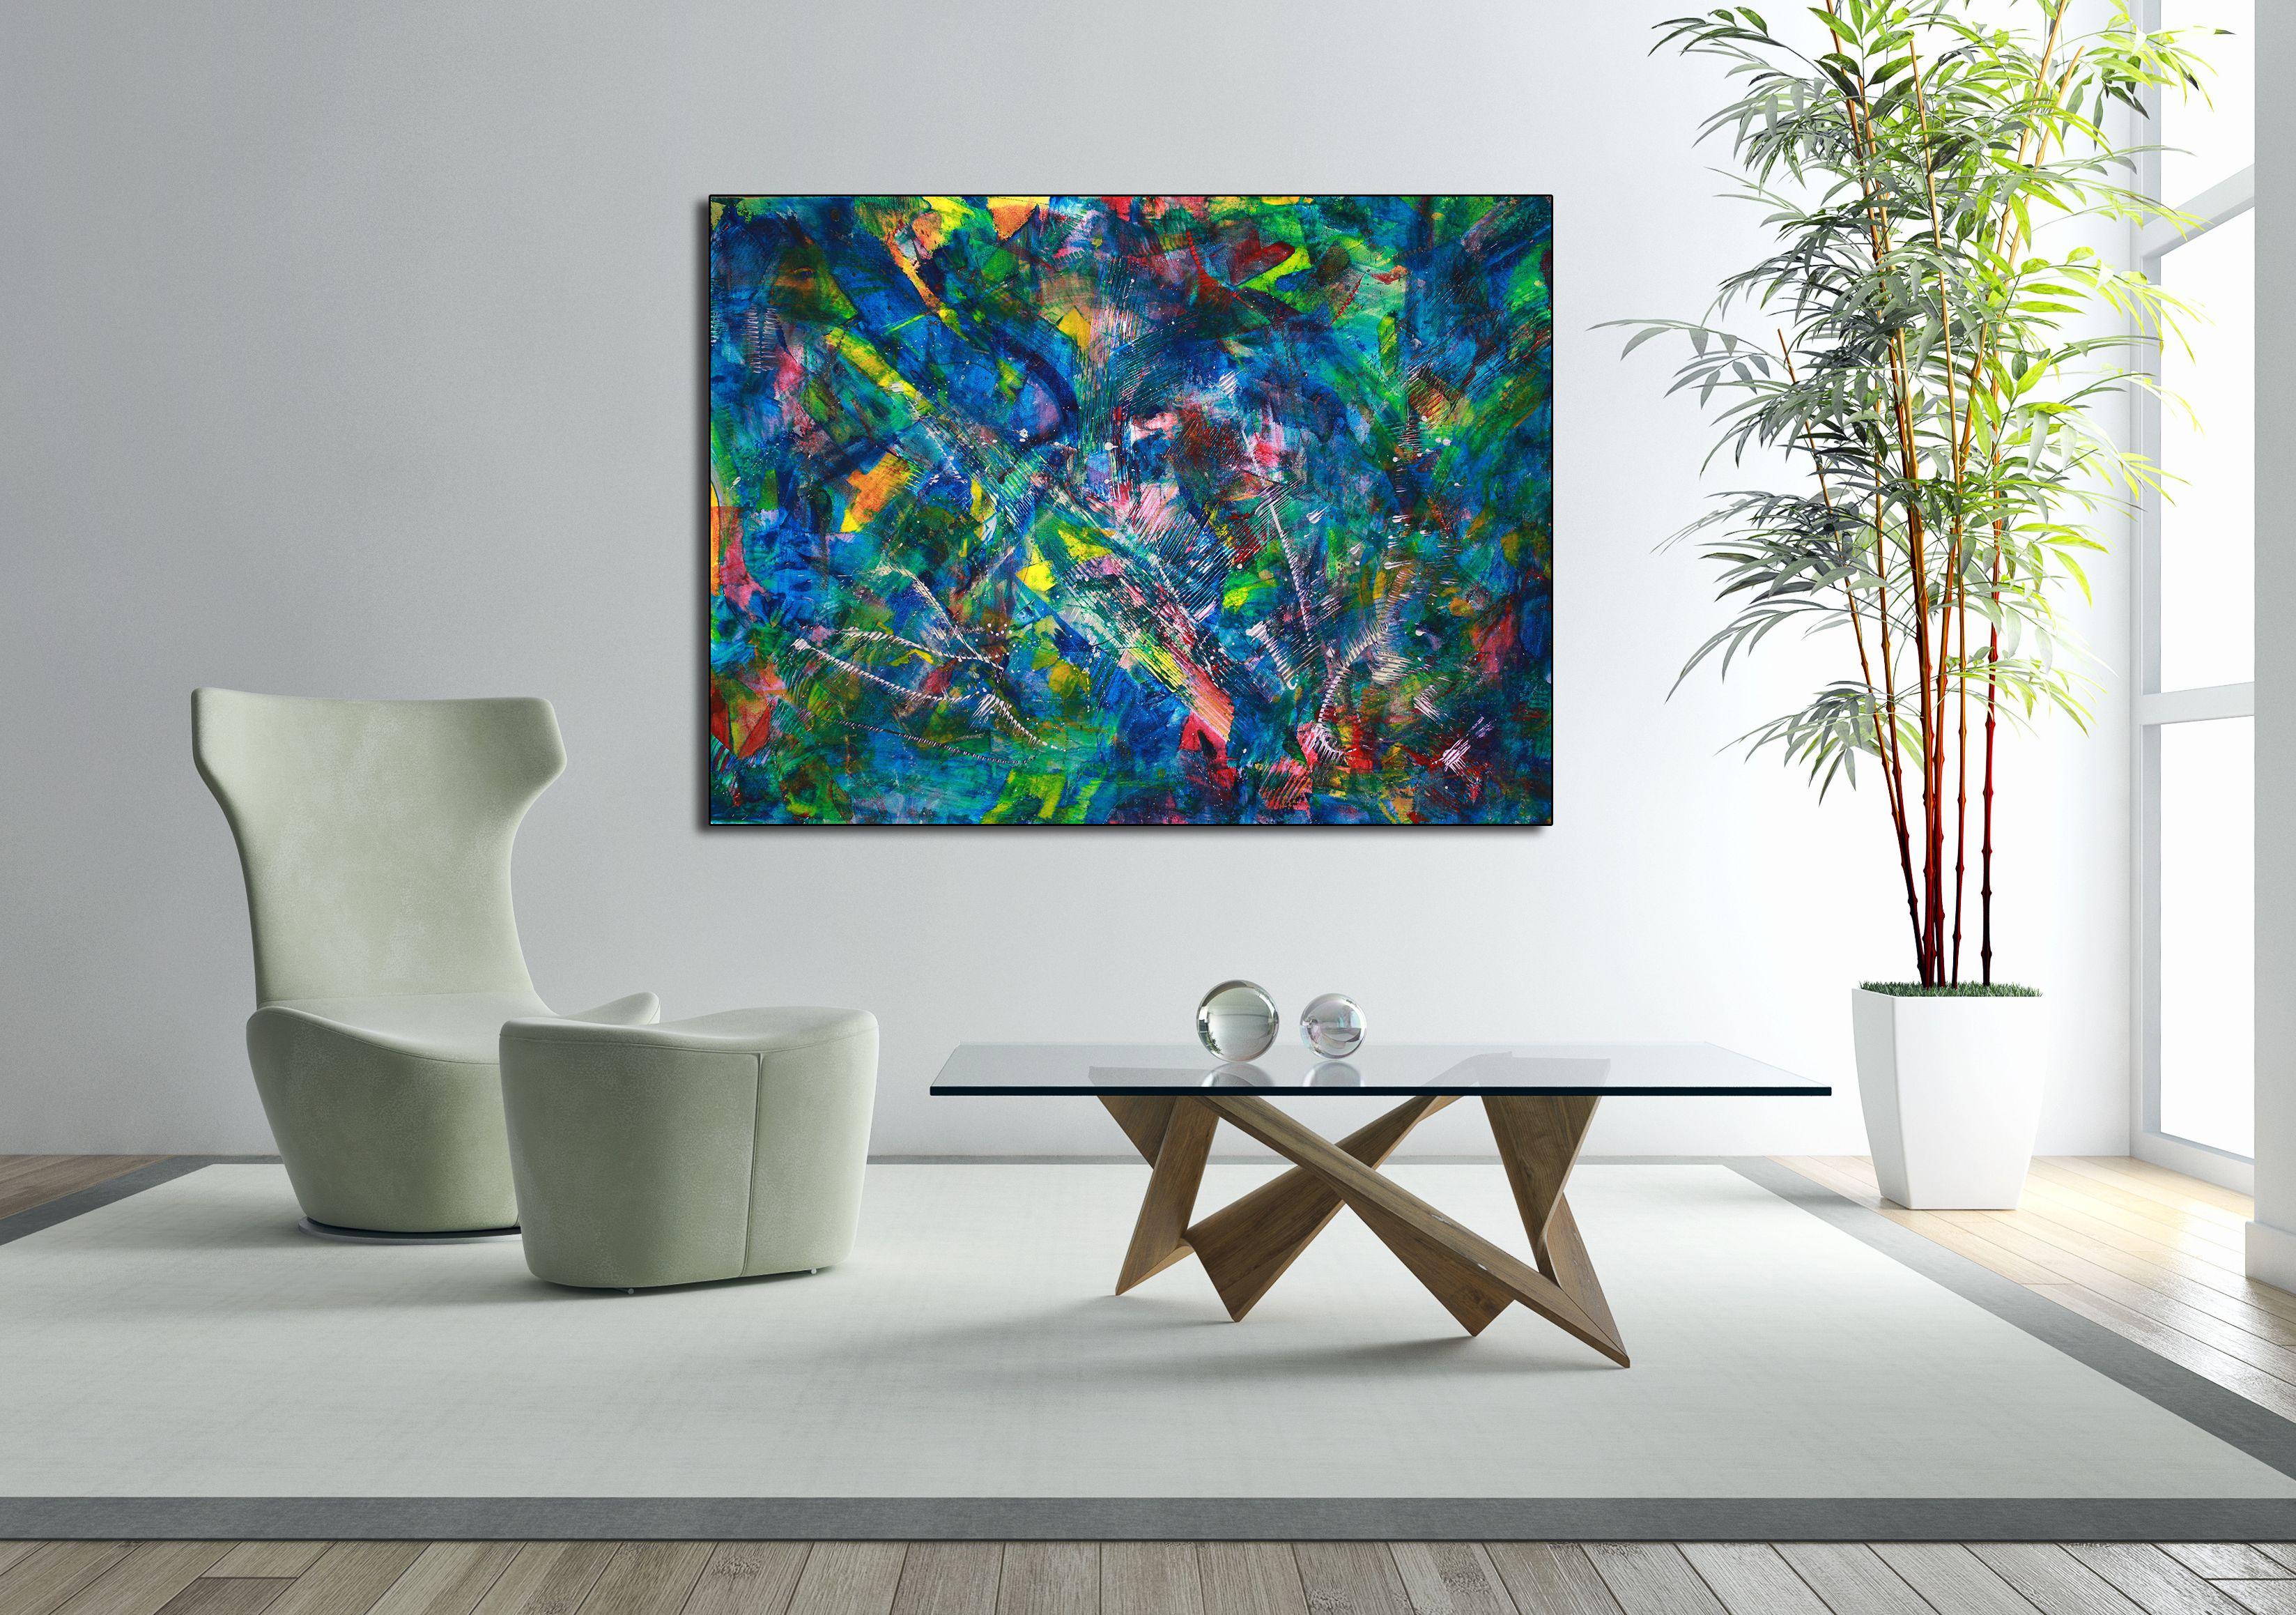 Peinture acrylique abstraite vibrante inspirée de l'arc-en-ciel, avec de beaux détails et une palette de couleurs vives. Texturée, beaucoup de mouvement et de lumière. Contient des effets iridescents et un magnifique mélange de couleurs.        